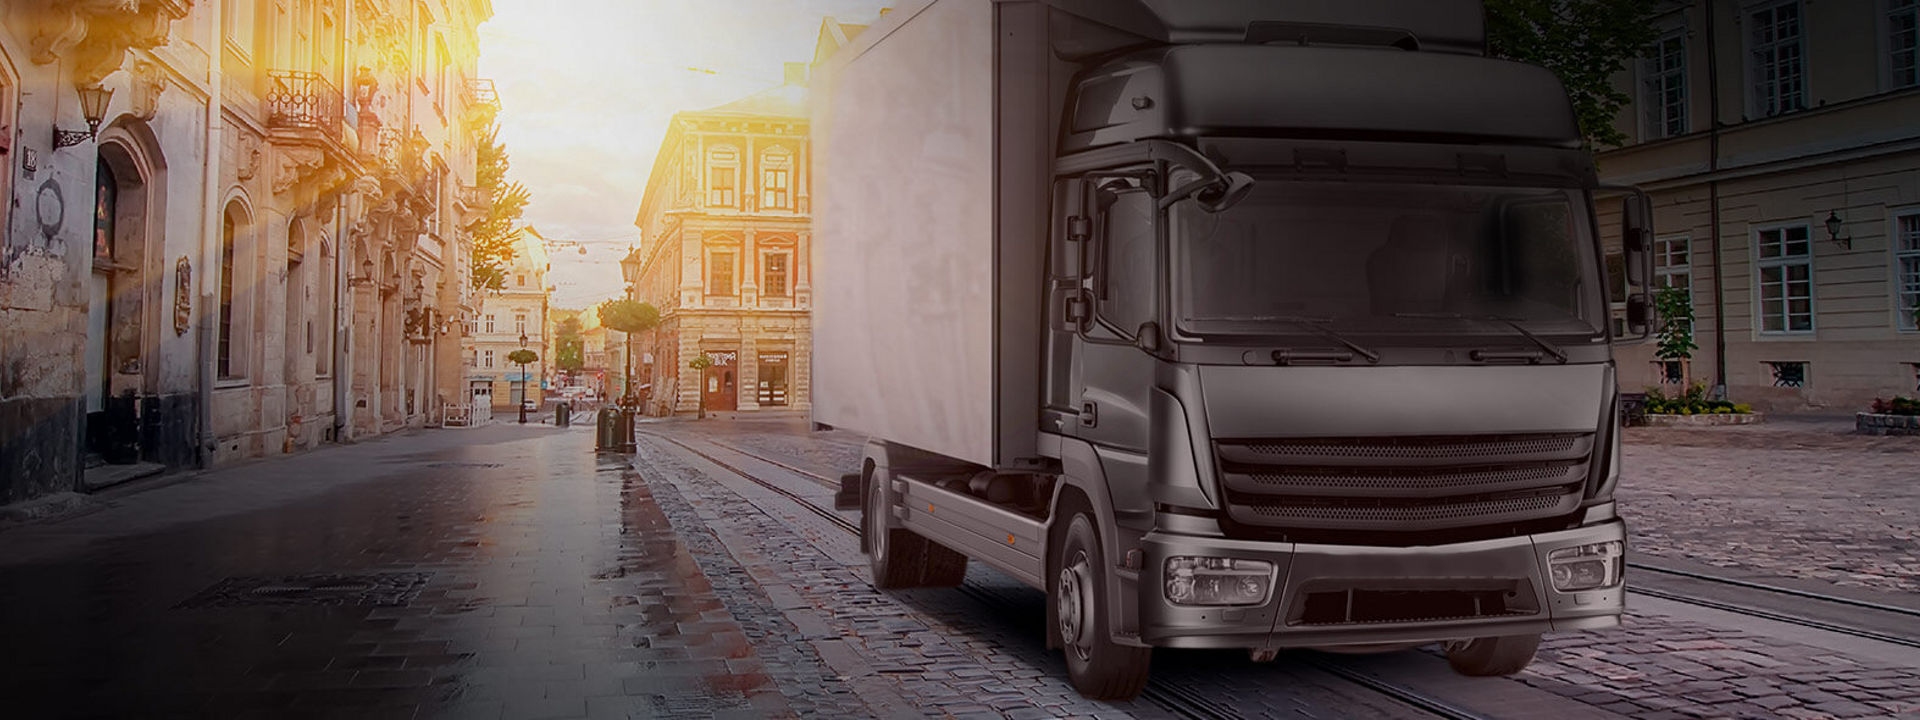 Αυτή η εικόνα δείχνει ένα φορτηγό που φοράει ελαστικά Bridgestone ελαφρών και μεσαίων φορτηγών για να παραδώσει εμπορεύματα στο κέντρο μιας πόλης.